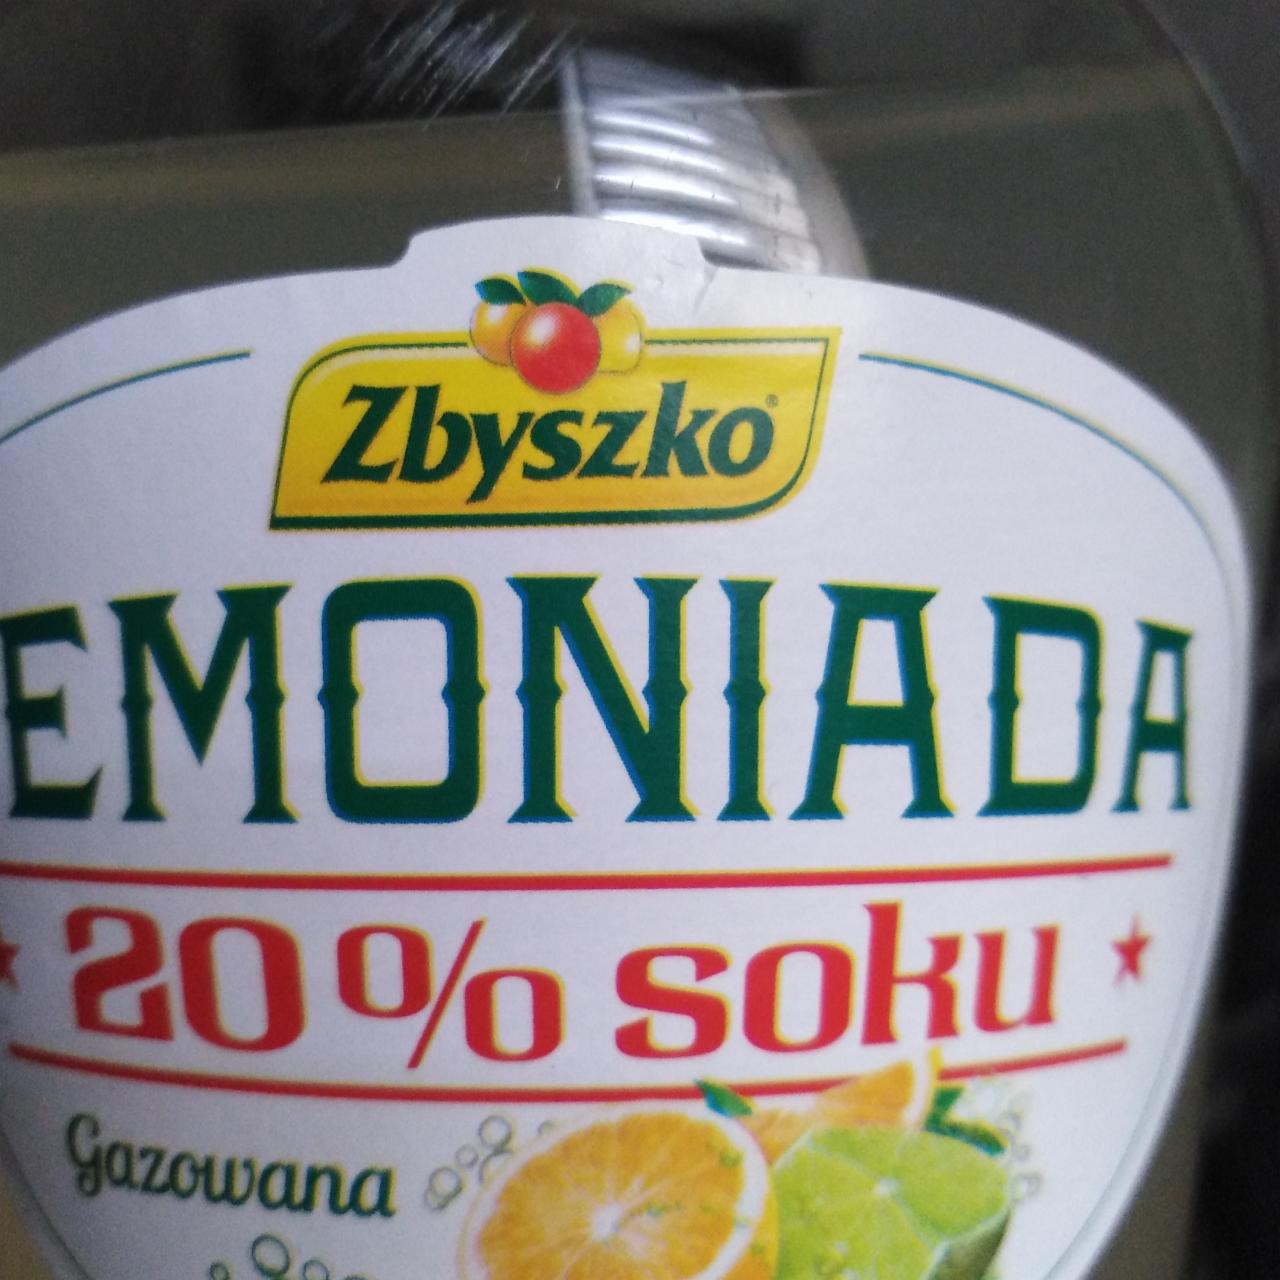 Zdjęcia - Lemoniada 20% soku o smaku limonkowo cytrynowym Zbyszko